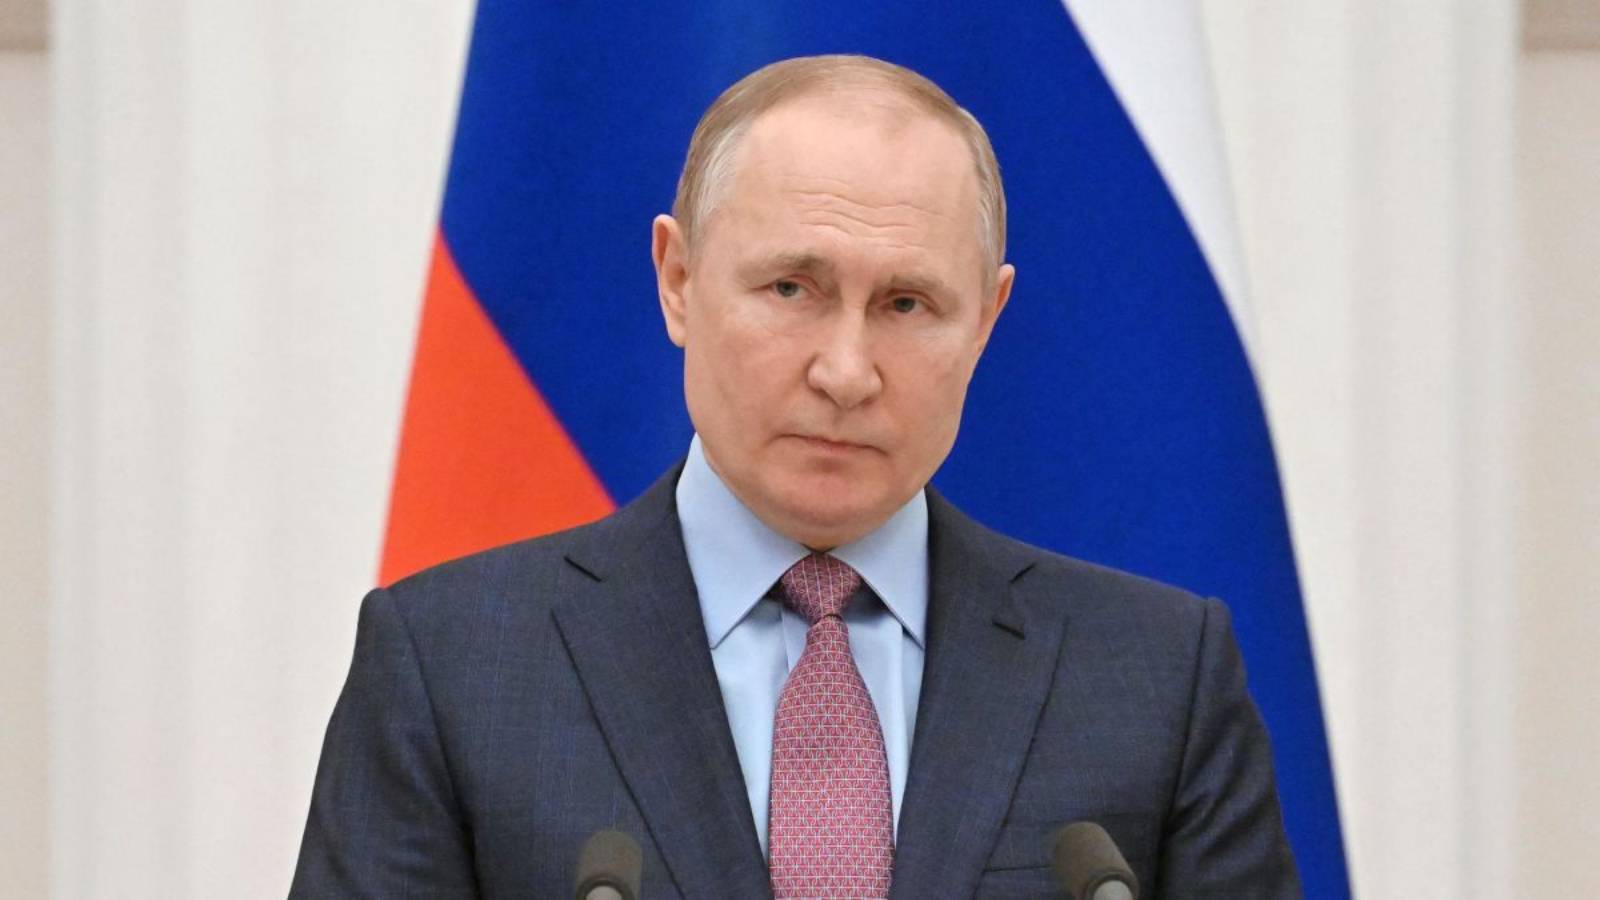 Vladimir Putin non intende entrare in conflitto con la NATO